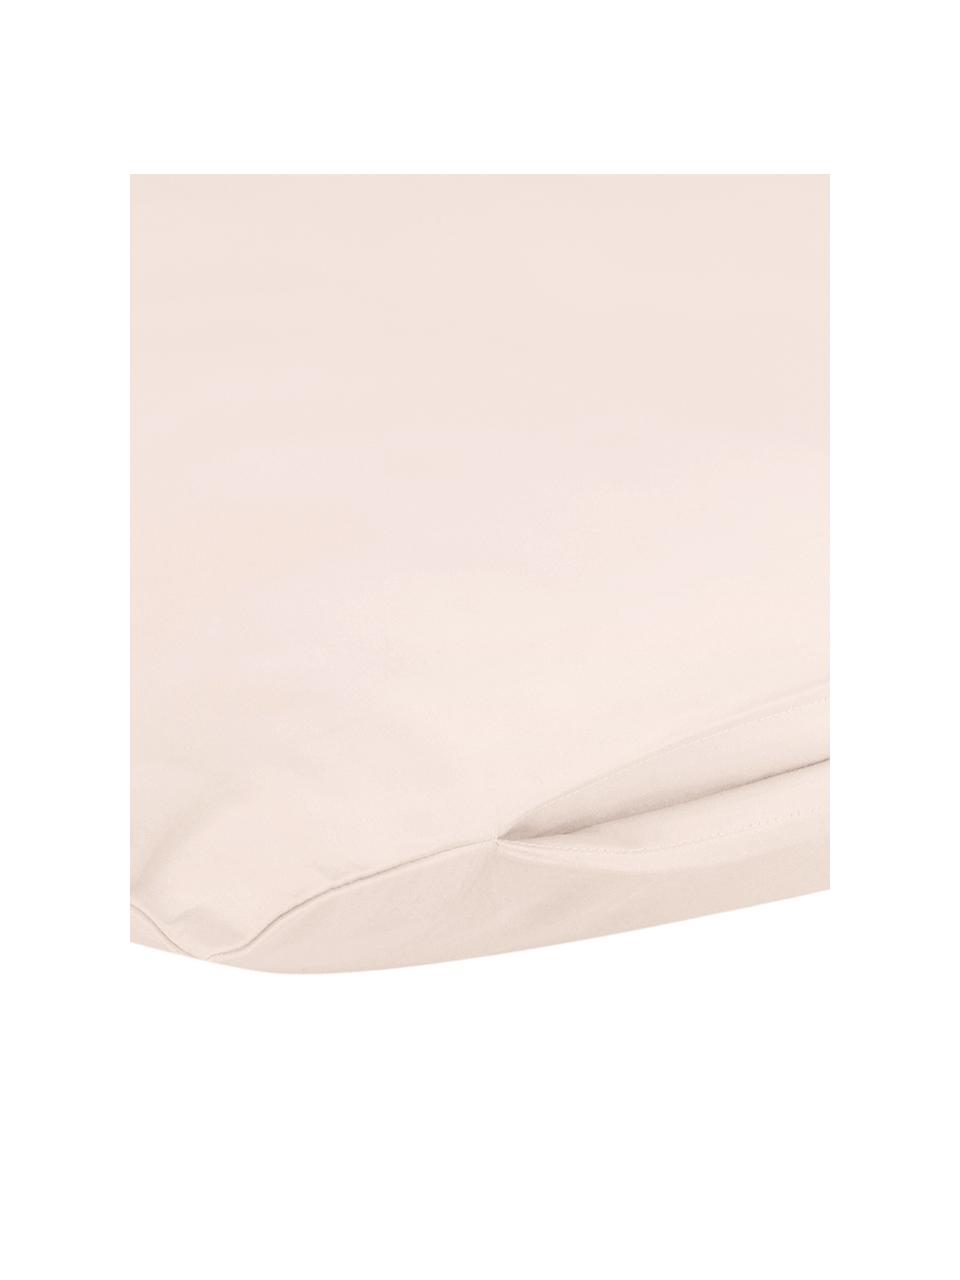 Baumwollsatin-Kopfkissenbezüge Comfort in Rosa, 2 Stück, Webart: Satin Fadendichte 250 TC,, Rosa, B 40 x L 80 cm